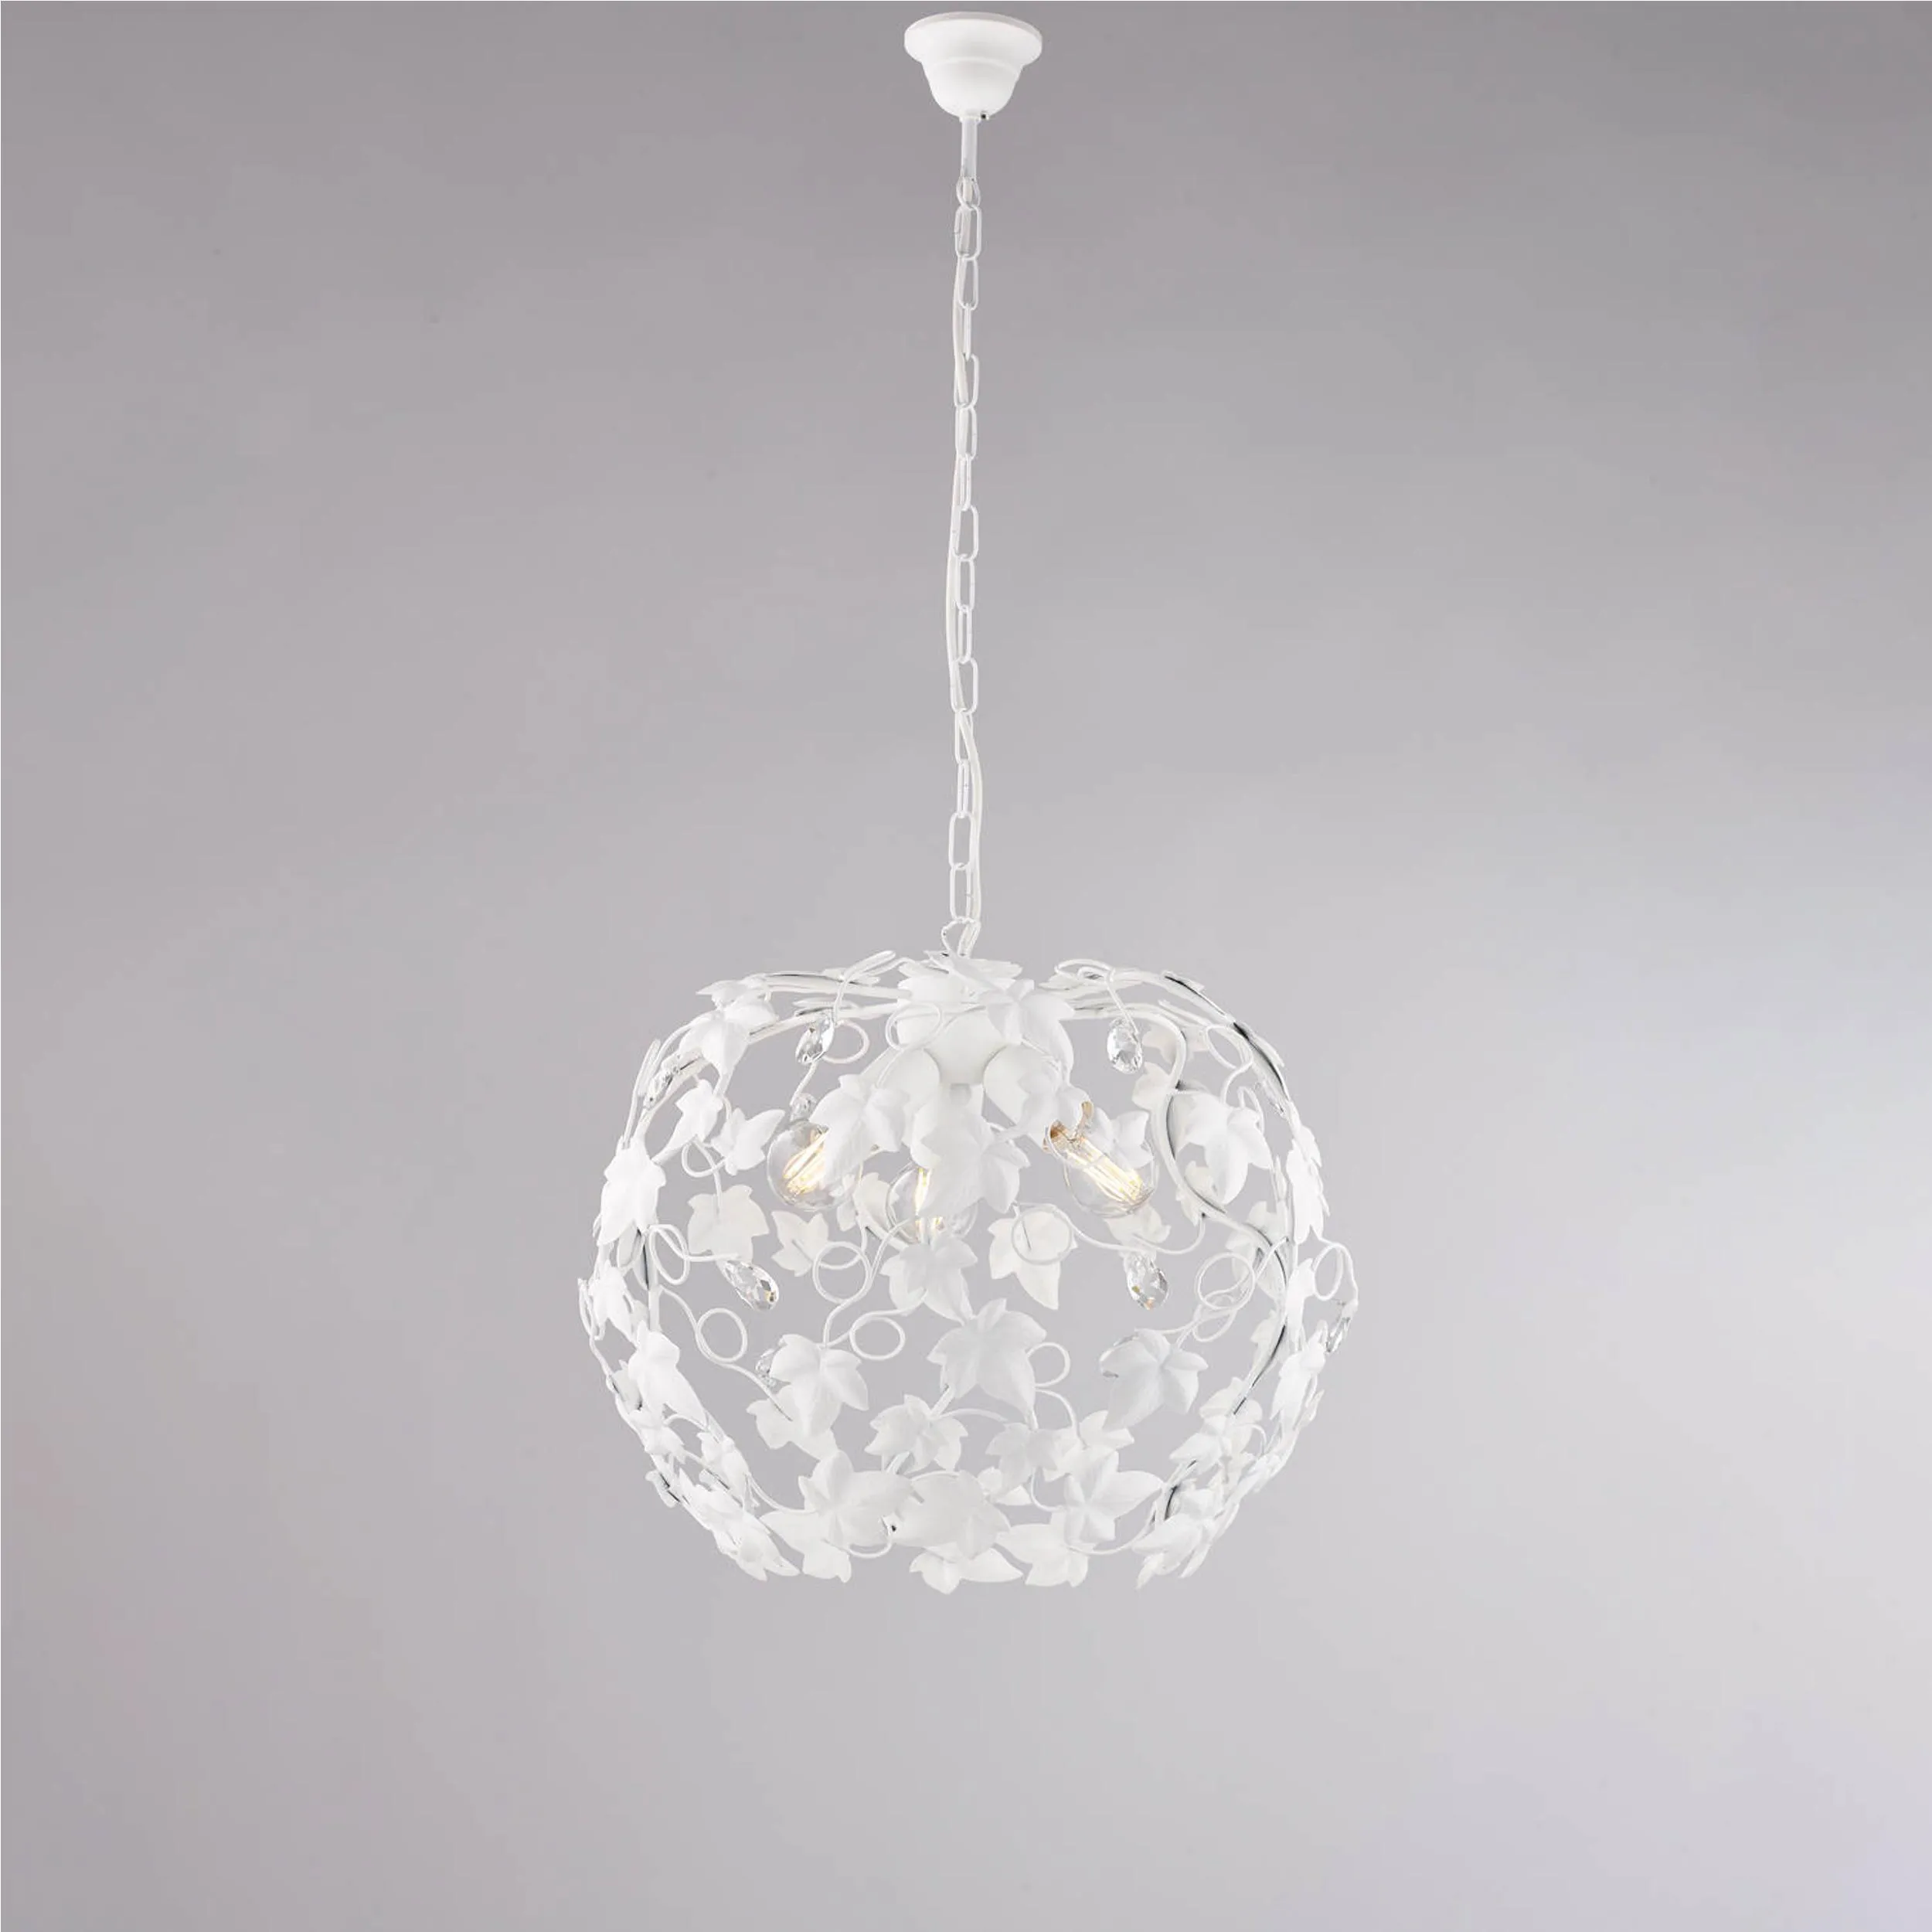 Lampadario Edera in ferro laccato bianco con decorazione shabby e strass in cristallo 3 luci , altezza 45 Cm, Cavo allungabile fino a 105 Cm, larghezza 50 Cm